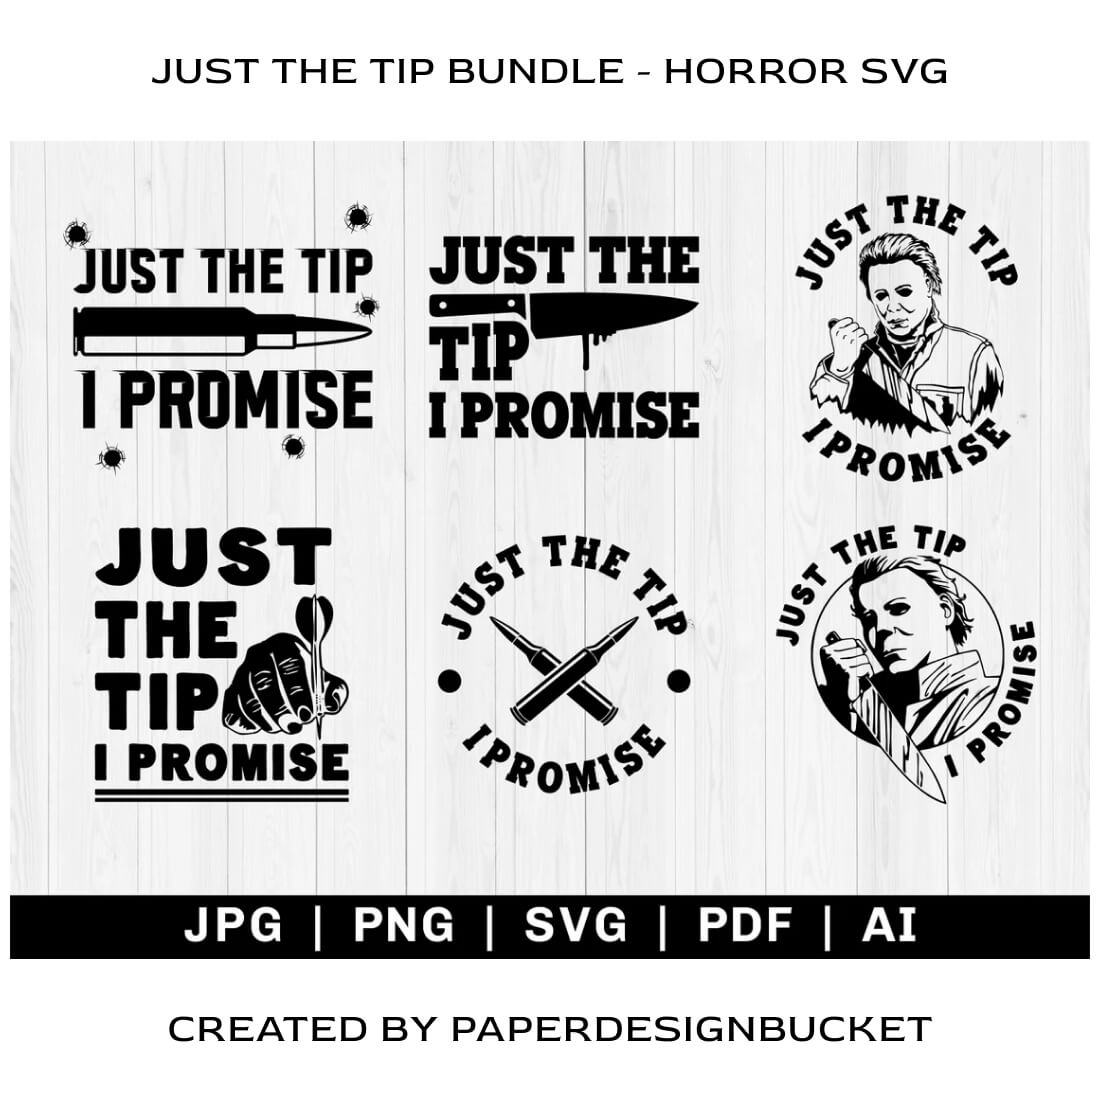 Just the Tip Bundle Horror SVG.